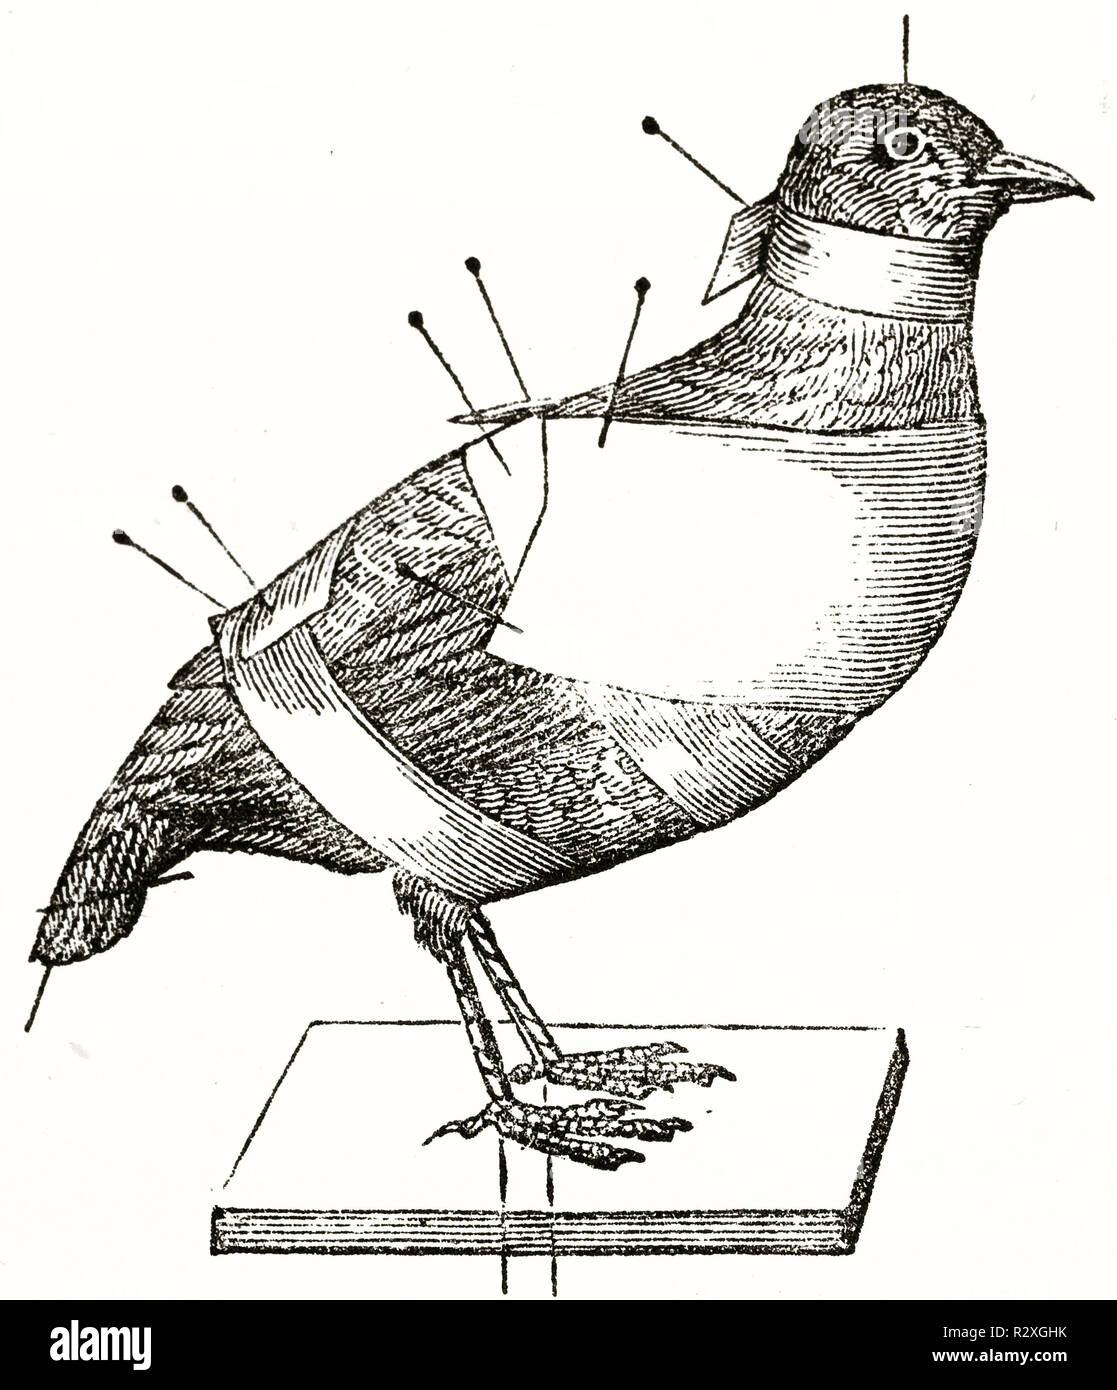 Vecchia illustrazione di un uccello in procedura di tassidermia: ripiene e bloccato con i perni. Da autore non identificato, publ. su Magasin pittoresco, Parigi, 1846 Foto Stock